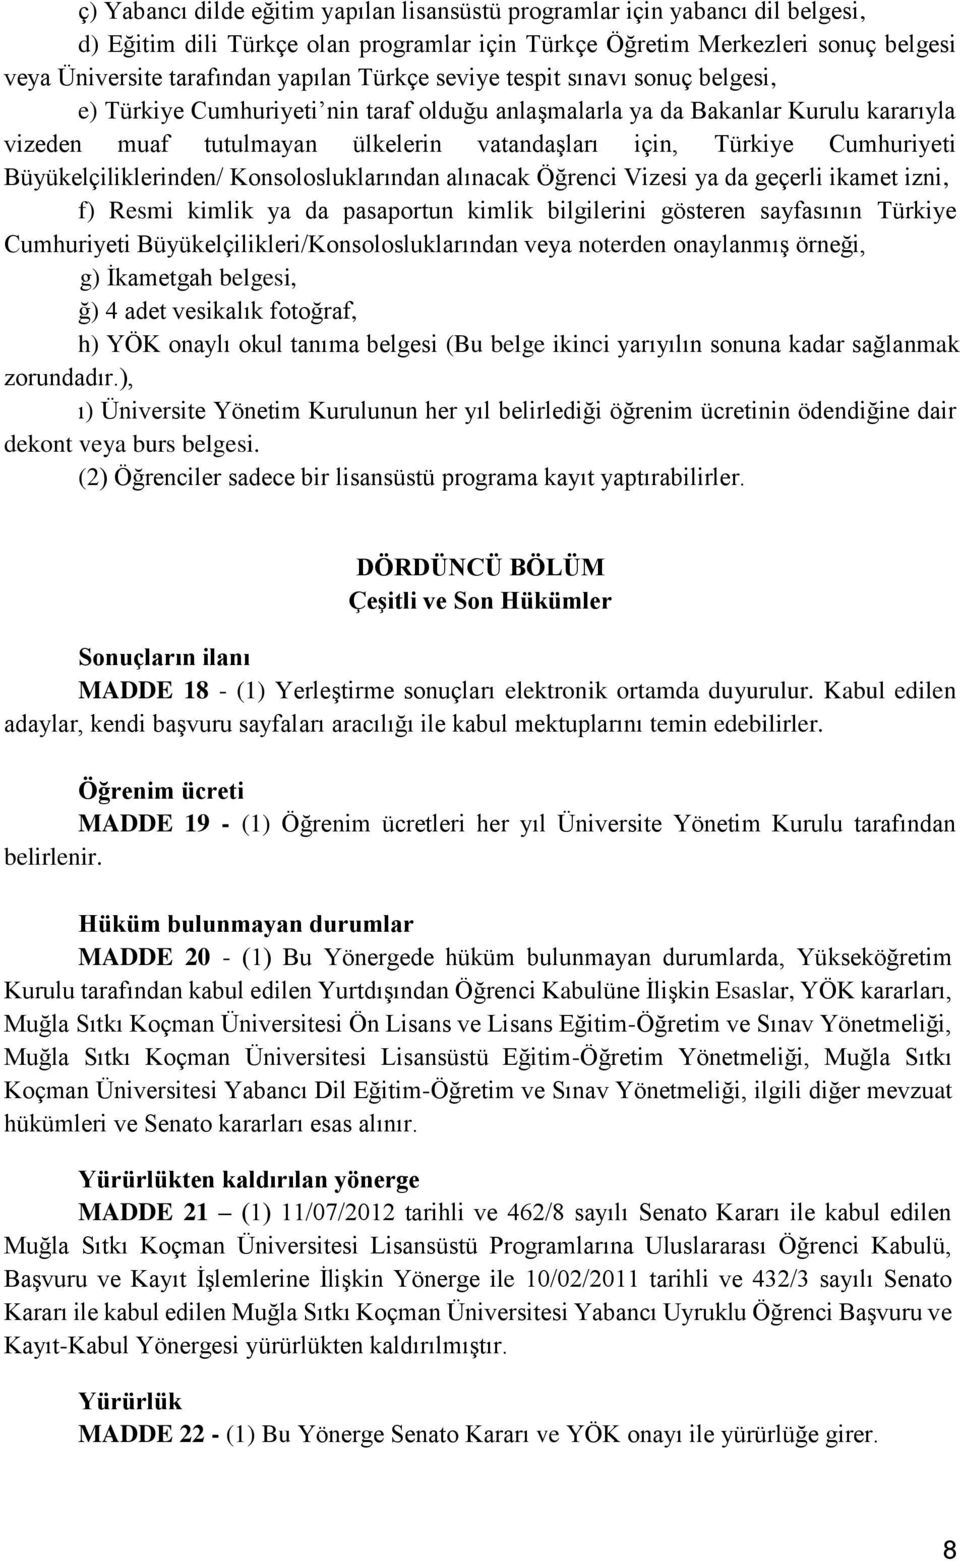 Cumhuriyeti Büyükelçiliklerinden/ Konsolosluklarından alınacak Öğrenci Vizesi ya da geçerli ikamet izni, f) Resmi kimlik ya da pasaportun kimlik bilgilerini gösteren sayfasının Türkiye Cumhuriyeti